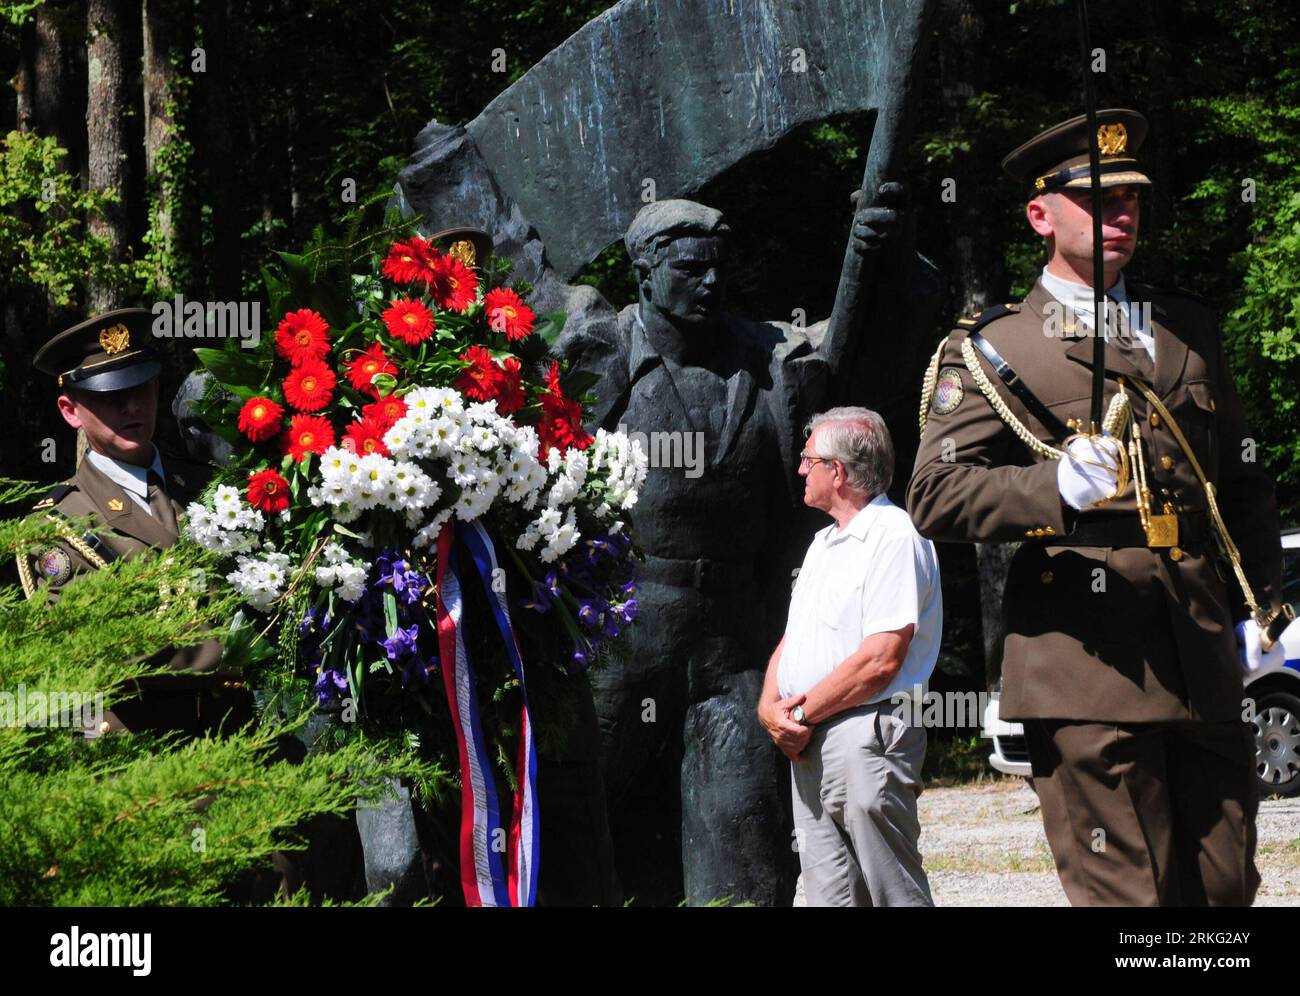 Bildnummer: 55535124 Datum: 22.06.2011 Copyright: imago/Xinhua (110622) -- SISAK, 22 giugno 2011 (Xinhua) -- i soldati croati tengono un mazzo di fiori vicino al monumento eretto in omaggio alla prima unità partigiana di 79 uomini nella foresta di Brezovica vicino a Sisak, Croazia, 22 giugno 2011. La commemorazione principale che ha visto la giornata della lotta anti-fascista della Croazia segna il 70° anniversario della fondazione della prima unità armata antifascista in Croazia. La prima brigata partigiana fu formata nella foresta croata di Brezovica il 22 giugno 1941. (Xinhua/Miso Lisanin) (msq) CROAZIA-GIORNATA DI LOTTA ANTIFASCISTA-COMMEMO Foto Stock